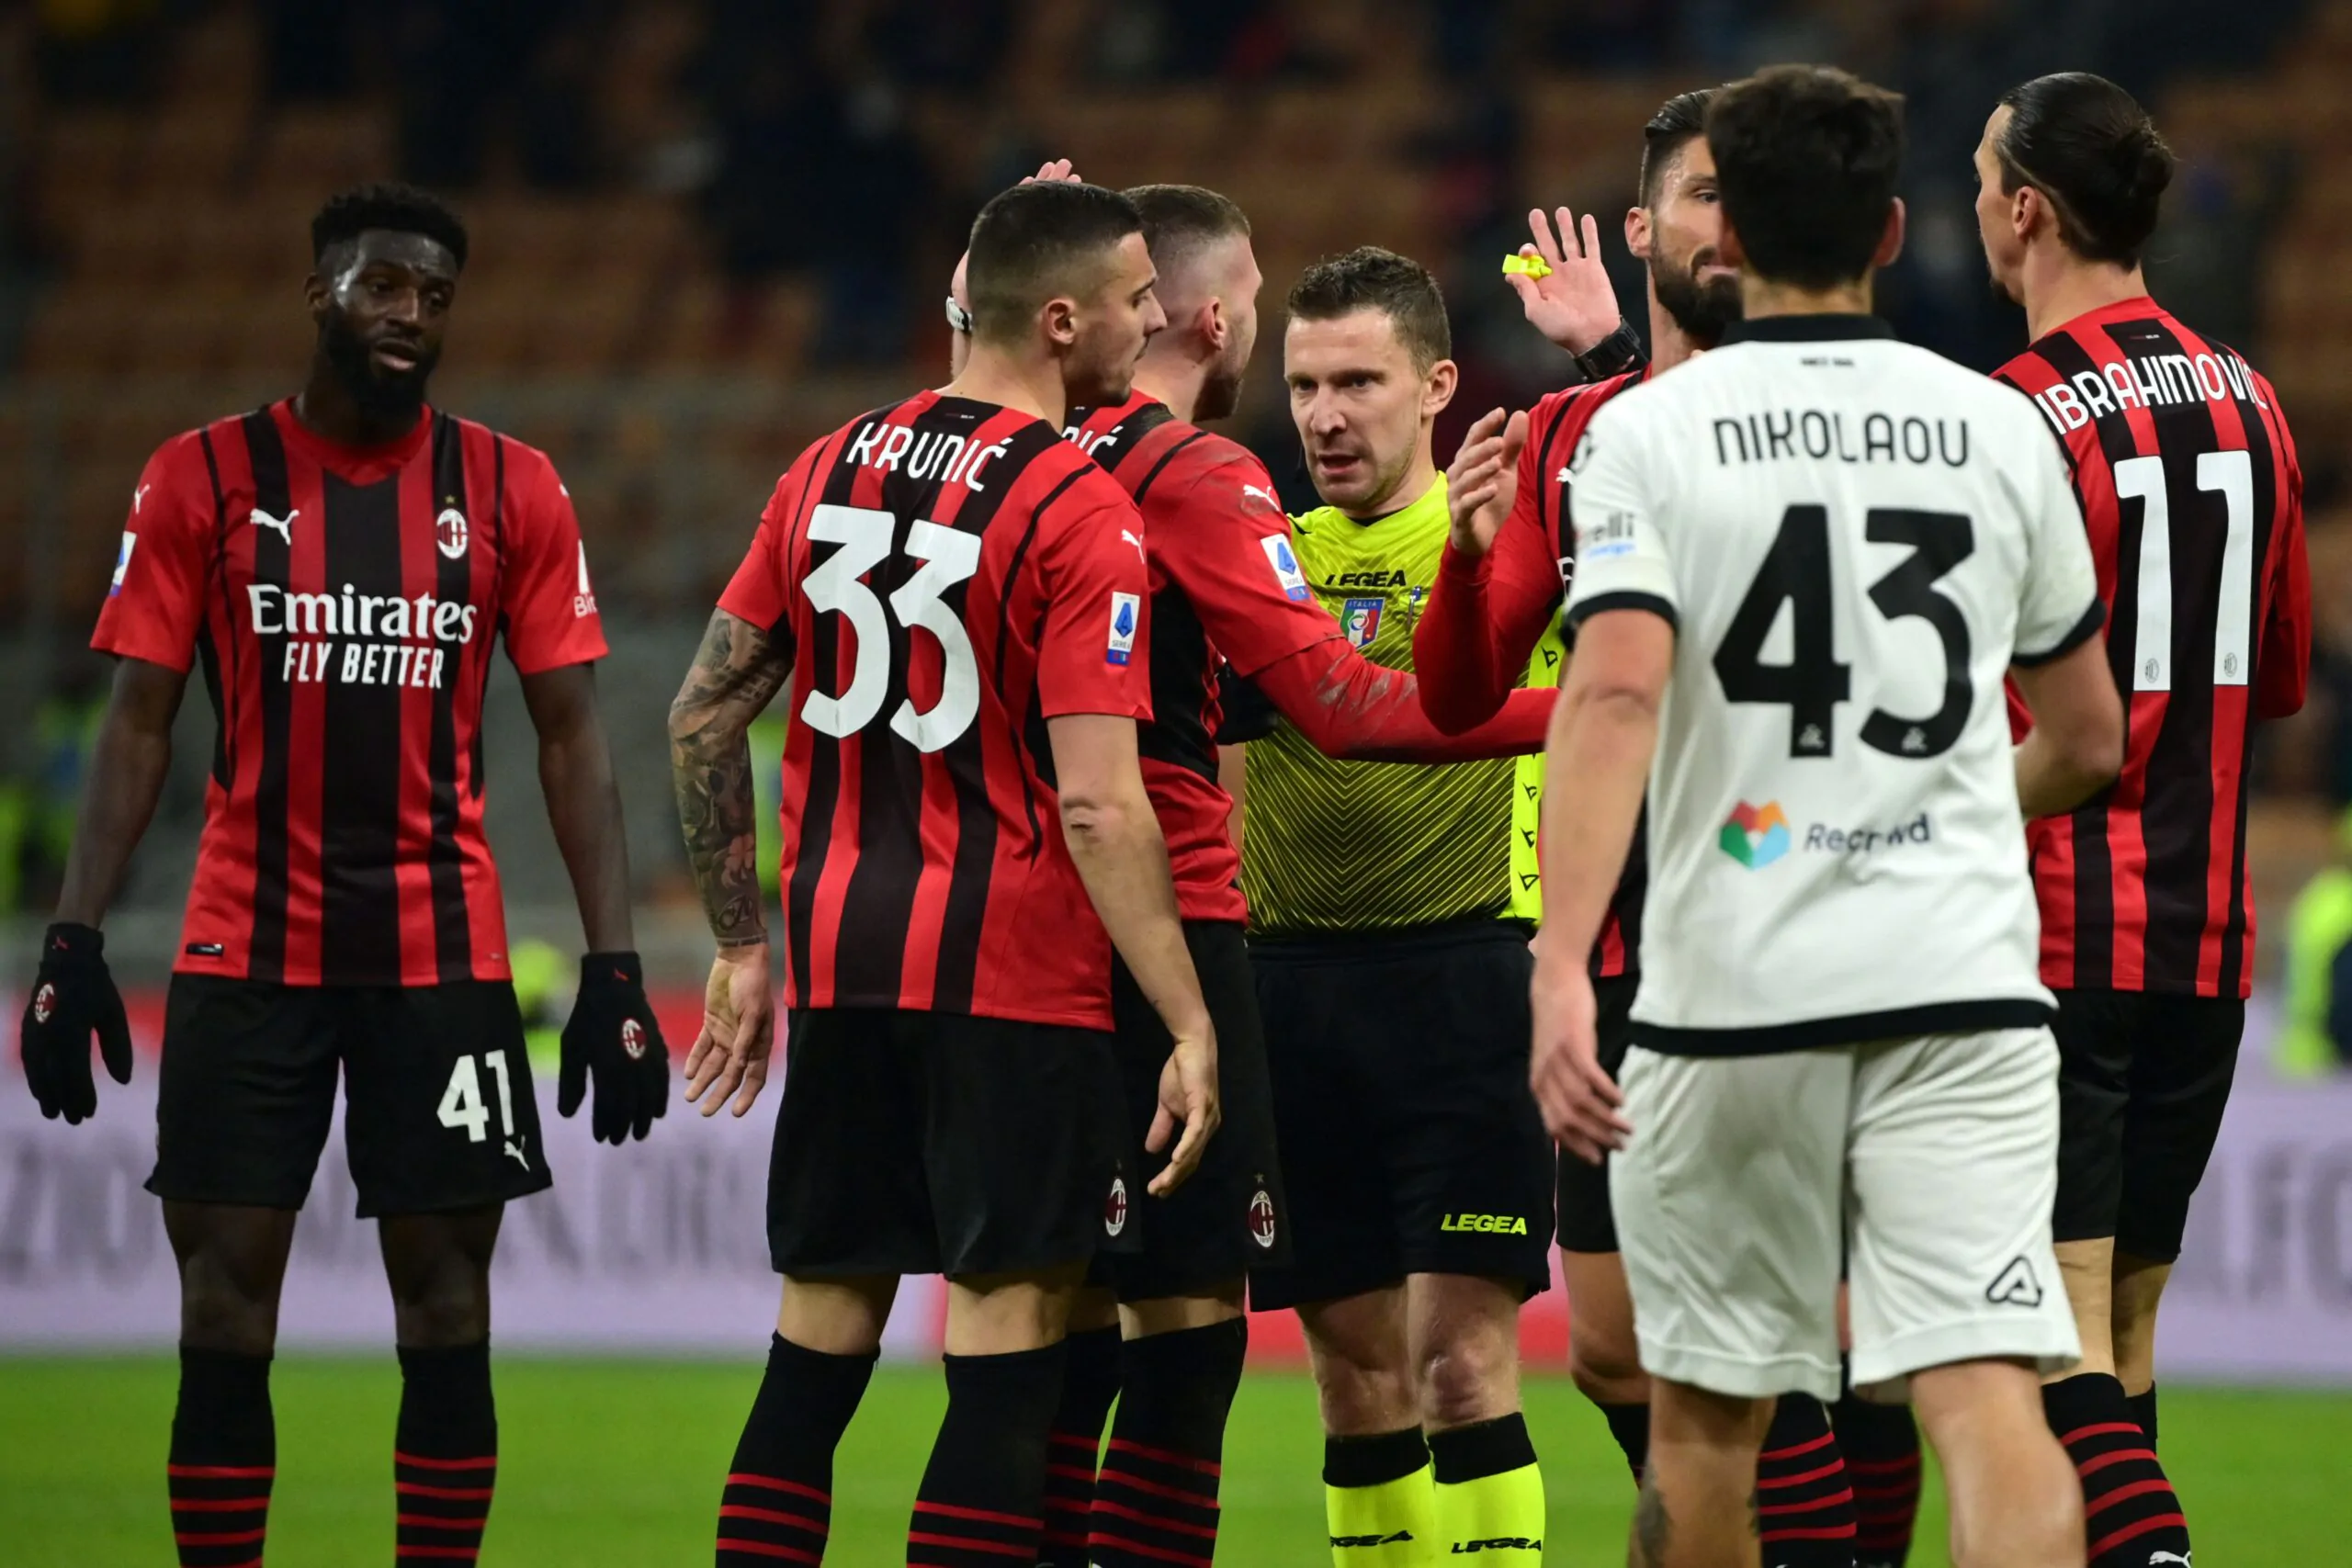 Calciomercato Milan, il centrocampista può partire: notizia sull’addio